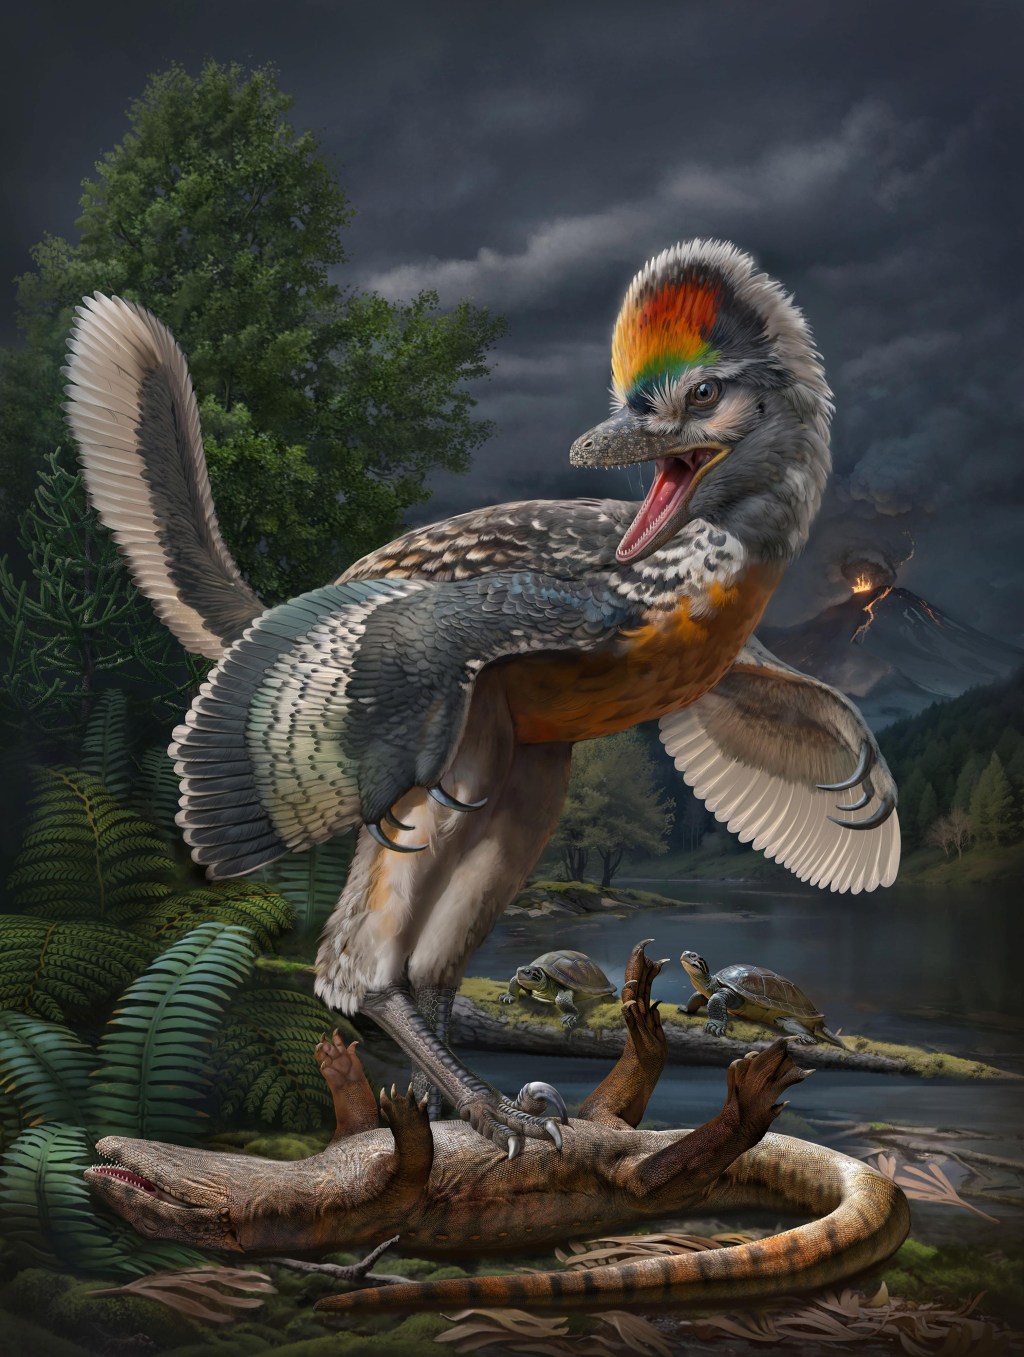 AVES VS DINOSSAUROS - Fujianvenator prodigiosus: novo fóssil pode ajudar a encontrar elo perdido